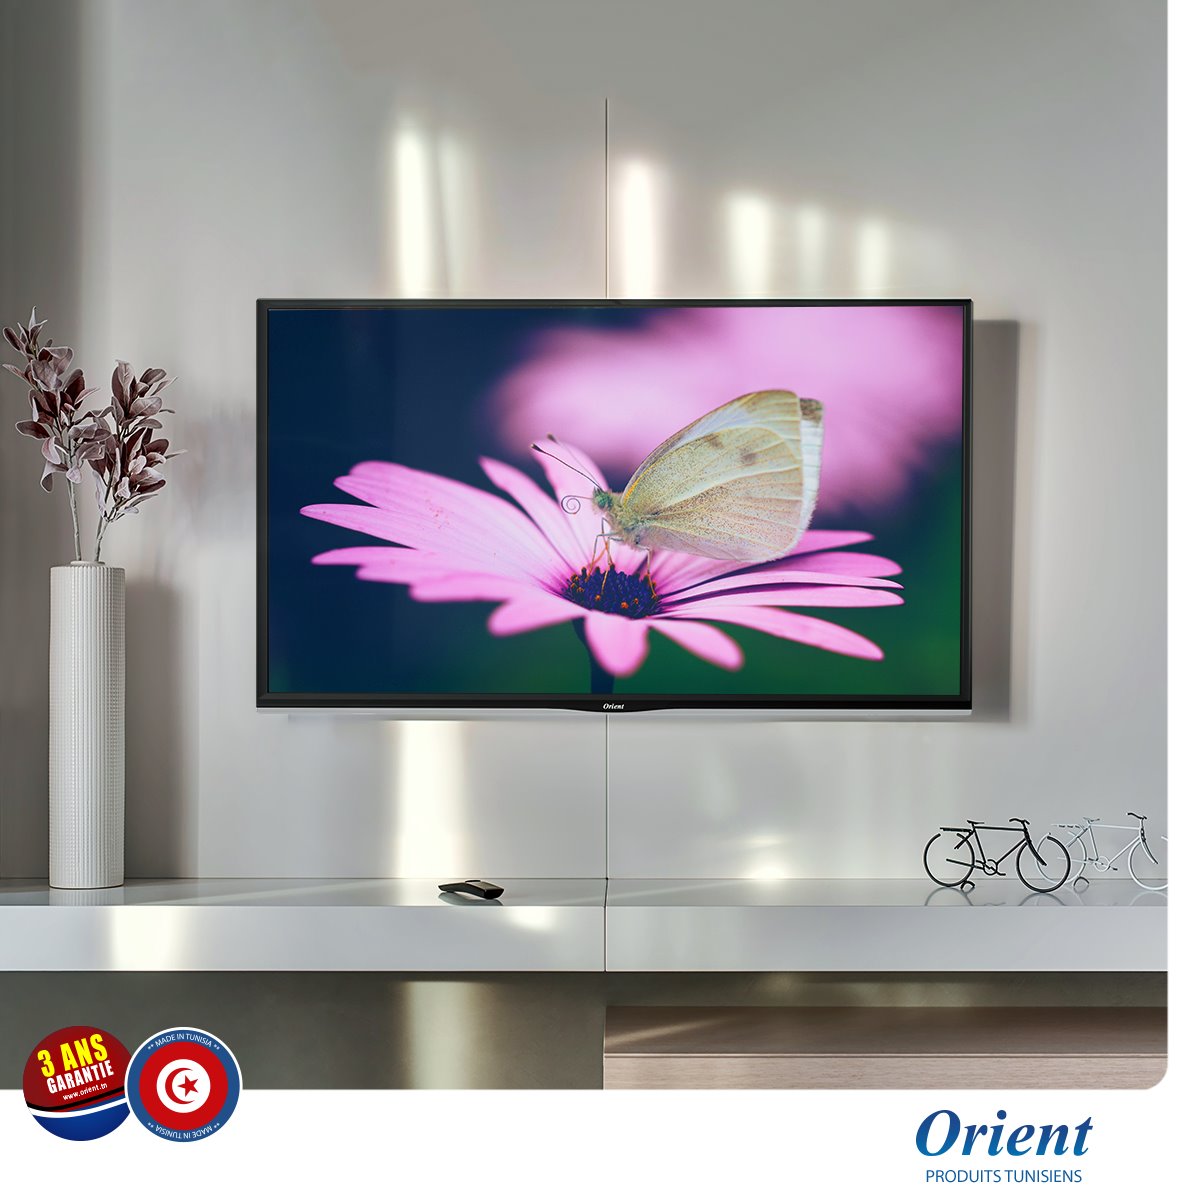 TV Orient LED 40" FULL HD Tunisie prix